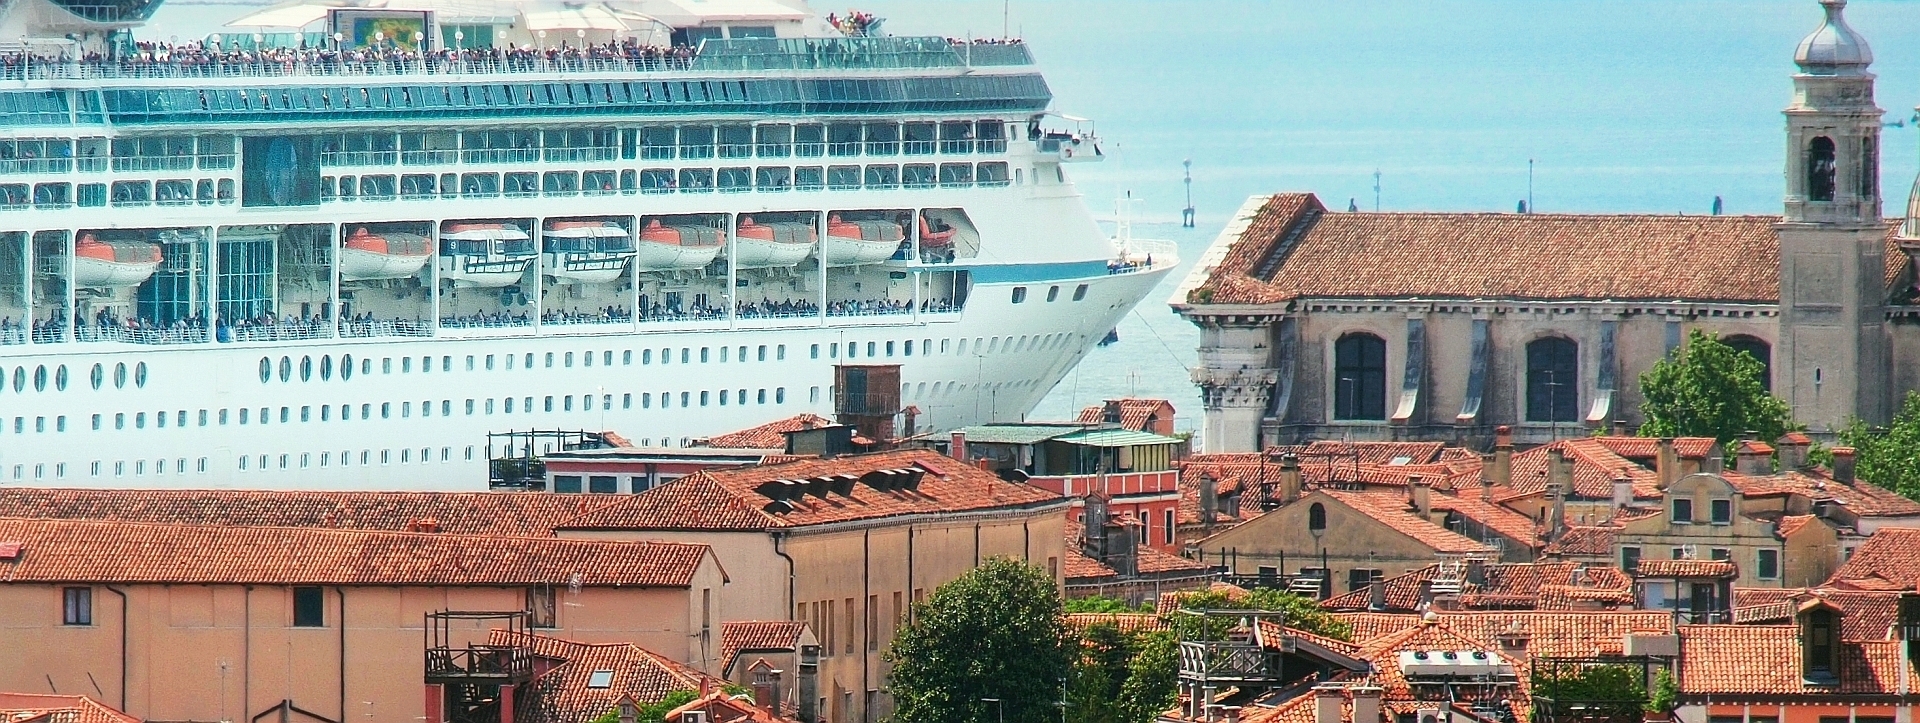 Vor Dorsoduro verläuft der breiteste aller Kanäle Venedigs, den sogar Kreuzfahrtschiffe passieren können. Immer wieder und auch derzeit verboten, sind bislang immer wieder zurückgekehrt. Warum wohl?